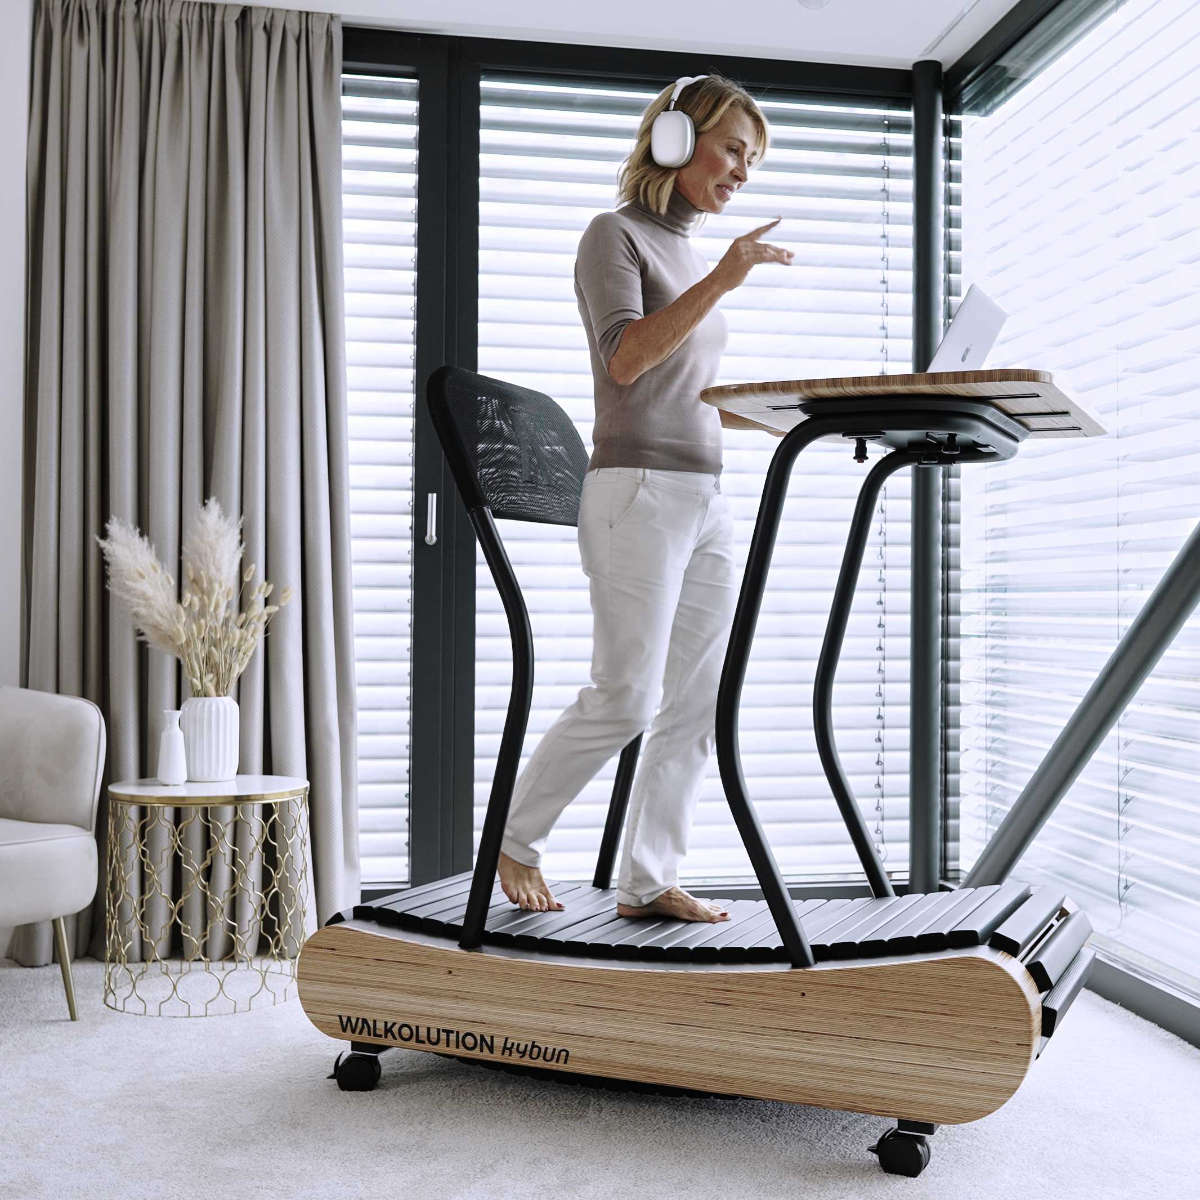 Wooden treadmill, manual treadmill, walking treadmill, treadmill desk, height adjustable desk, soft Walkolution USA